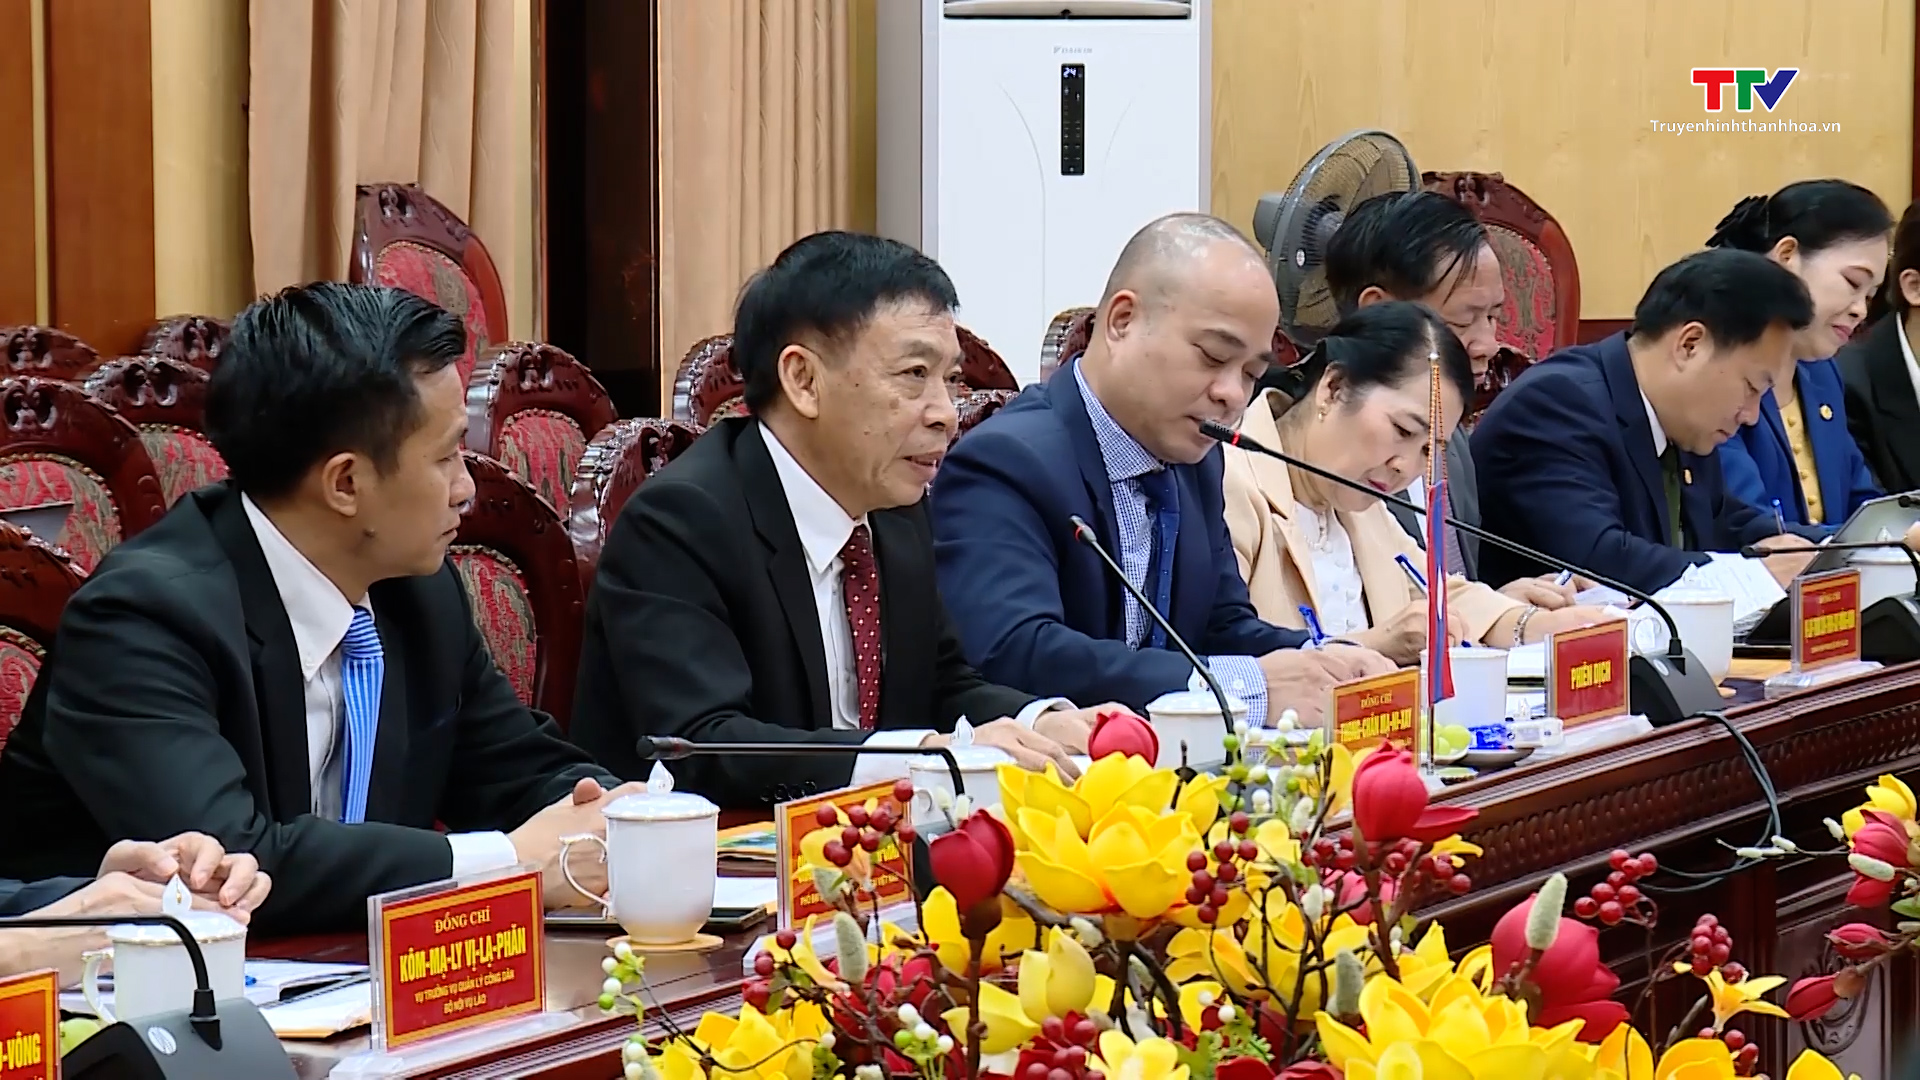 Đoàn cán bộ cấp cao của nước Cộng hoà dân chủ Nhân dân Lào thăm và làm việc tại tỉnh Thanh Hoá - Ảnh 3.